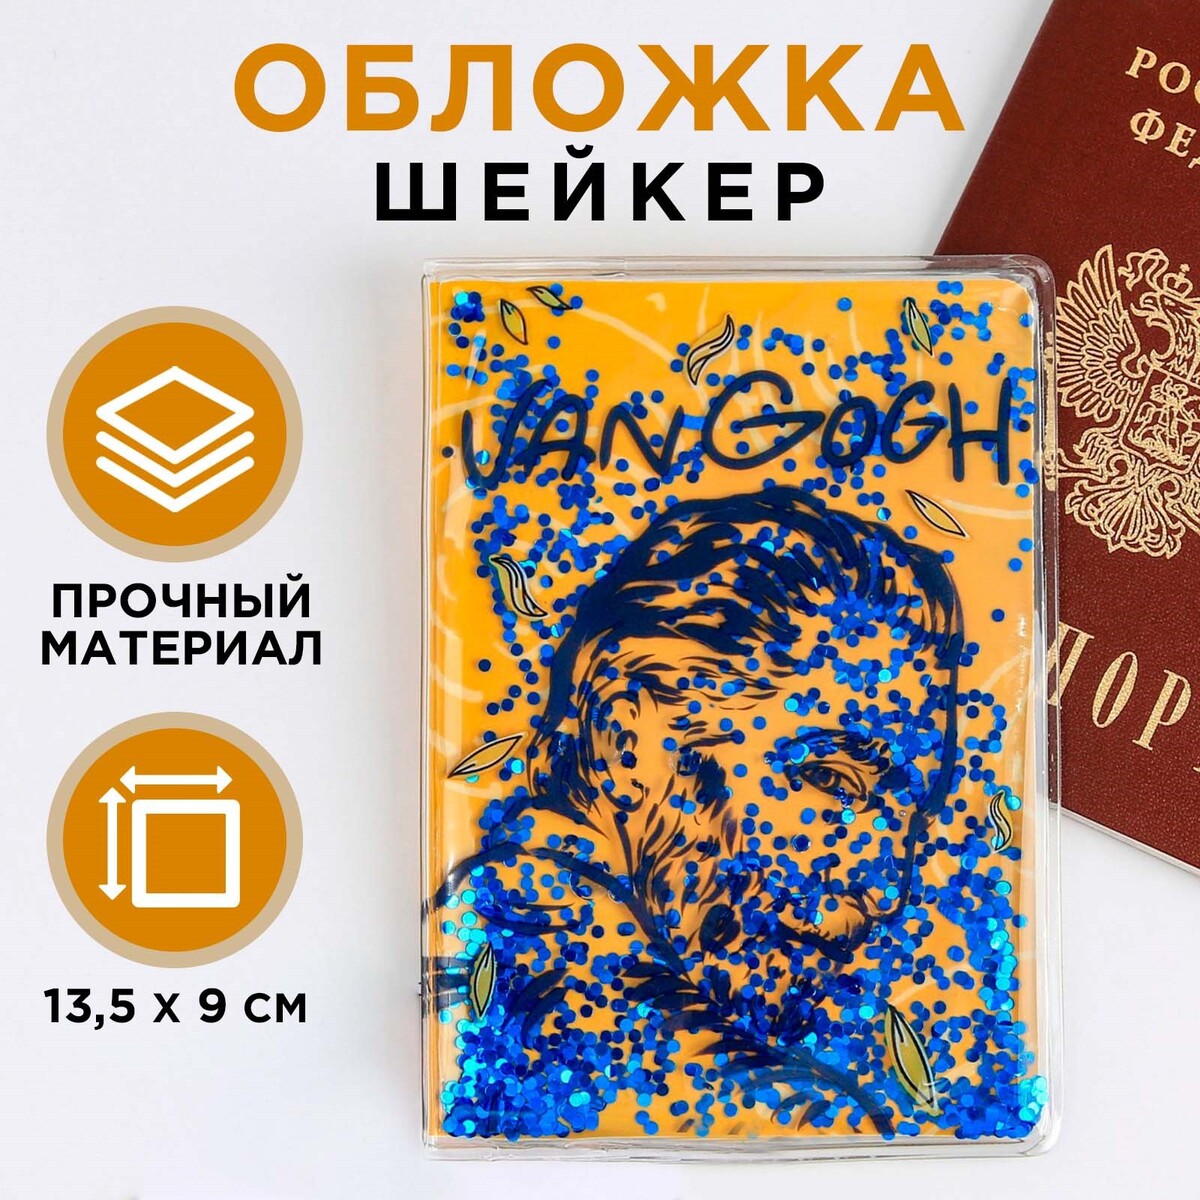 фото Обложка-шейкер для паспорта van gogh no brand